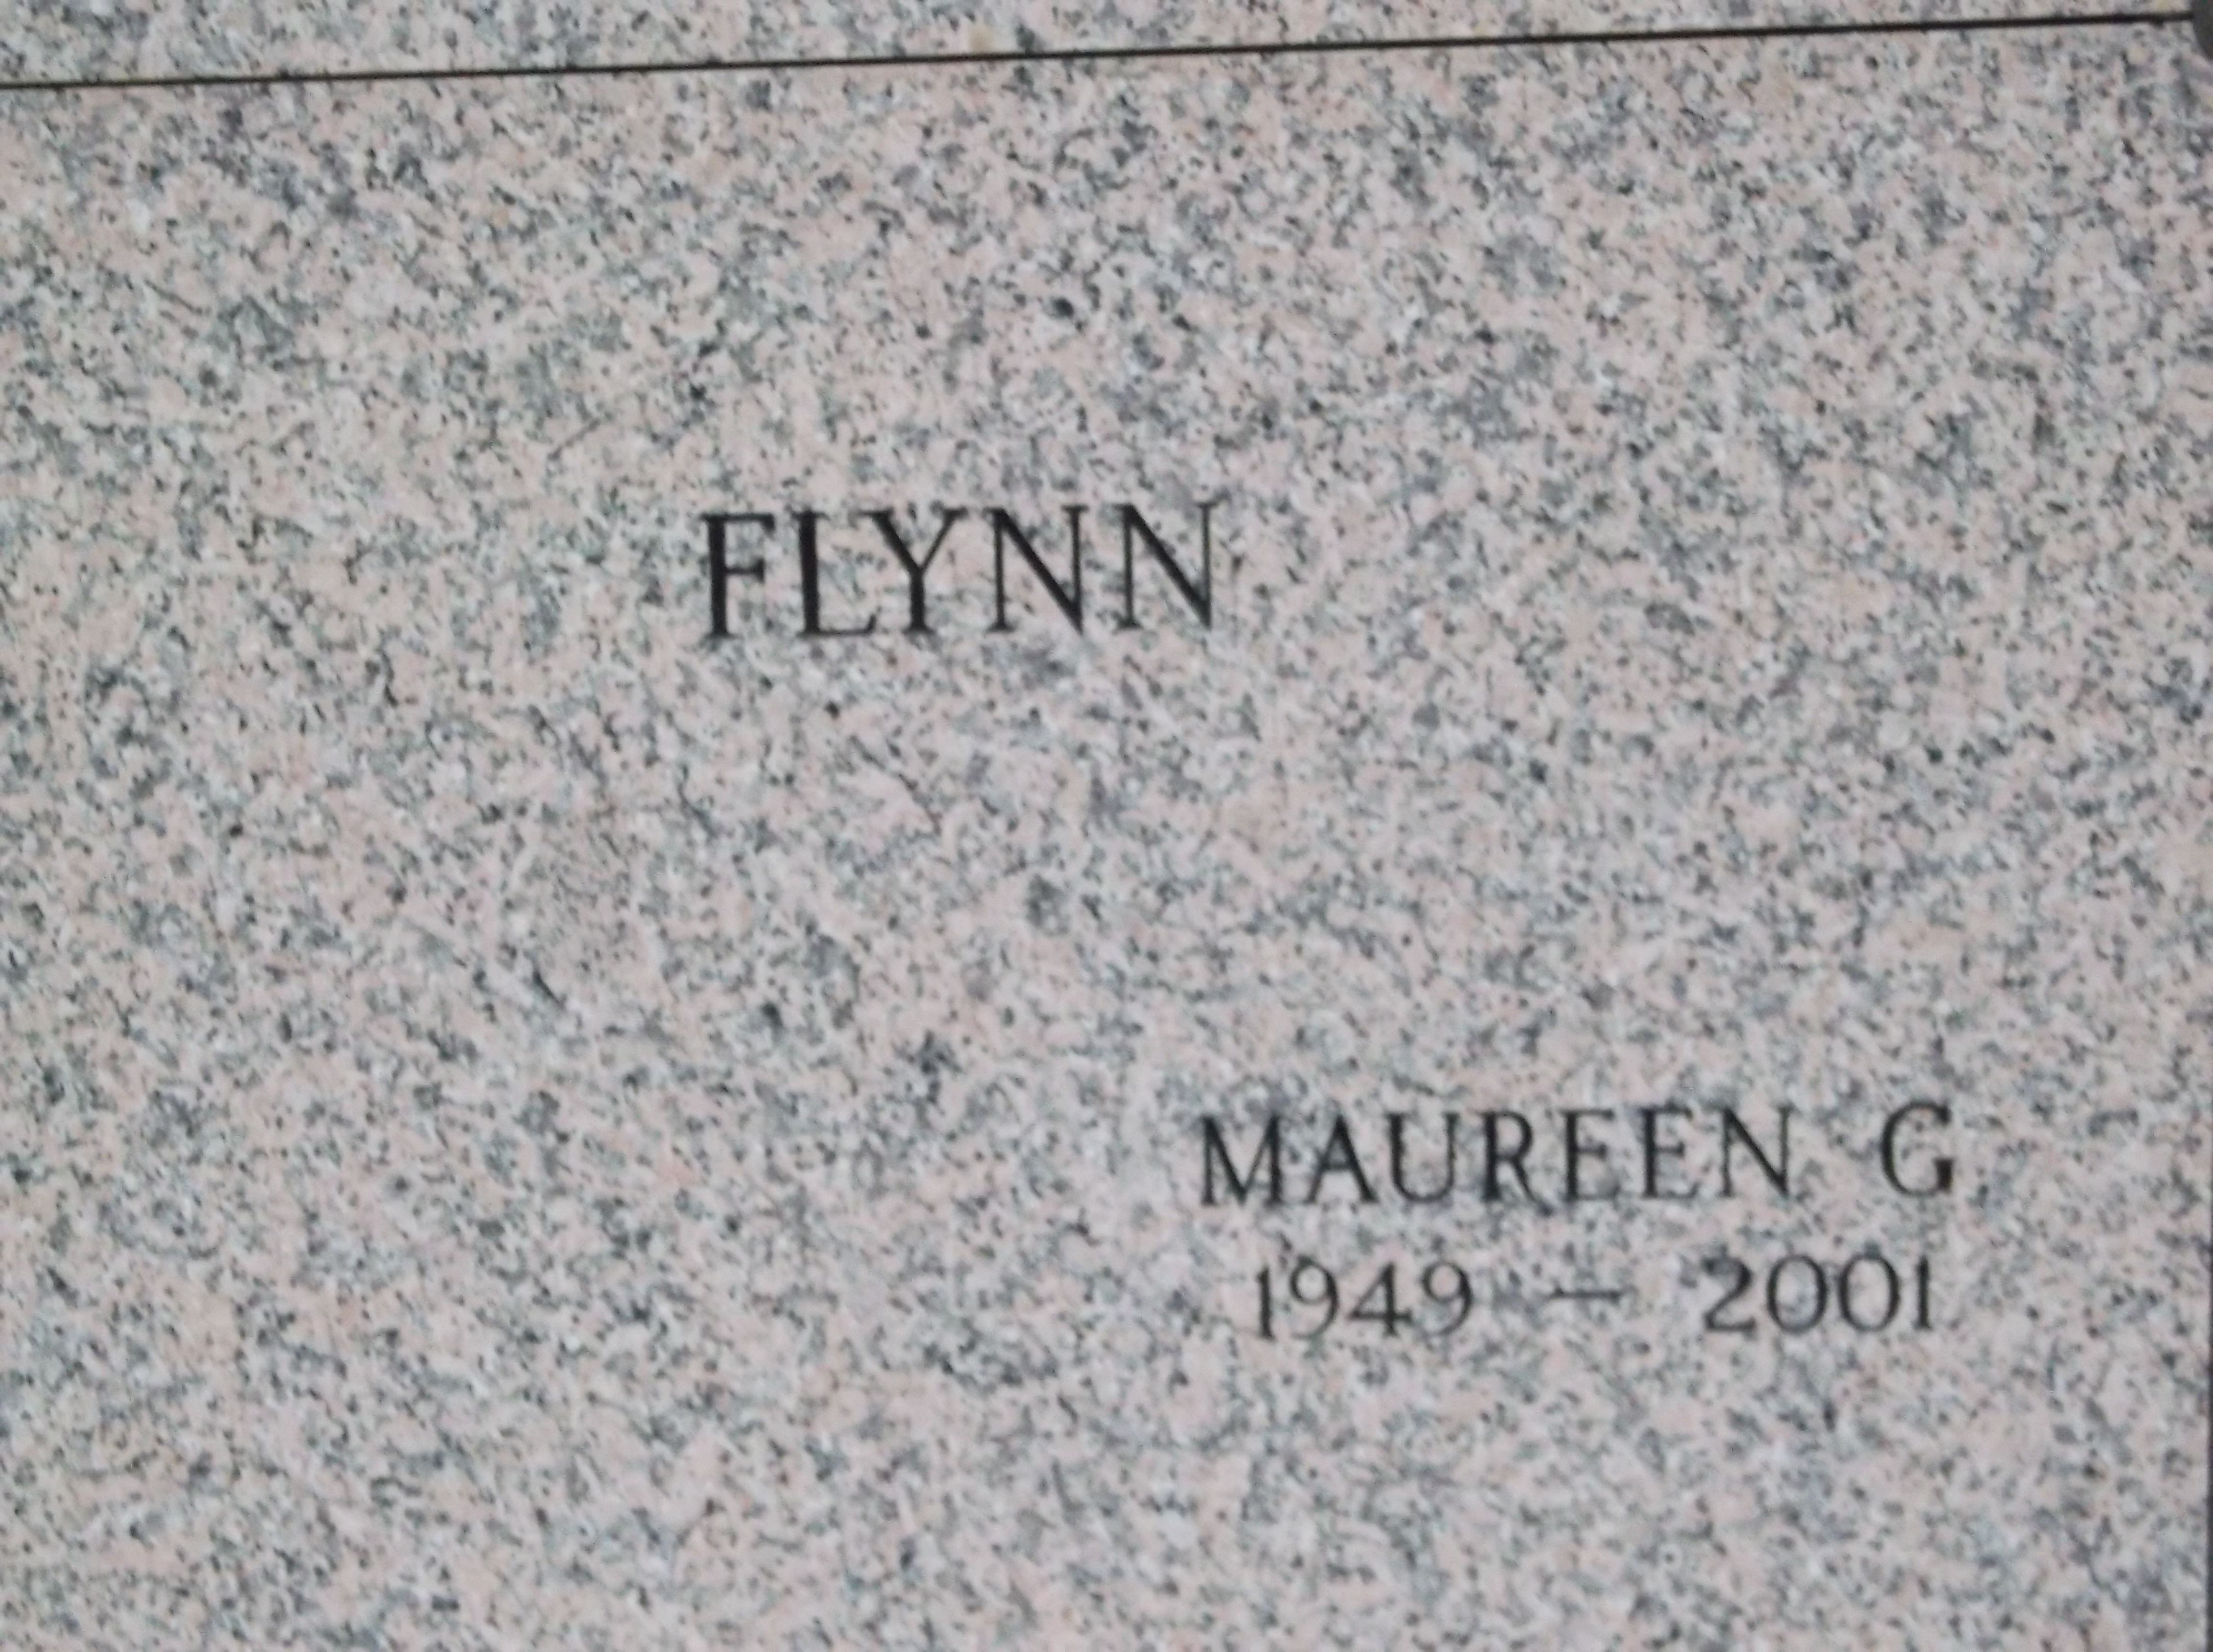 Maureen G Flynn